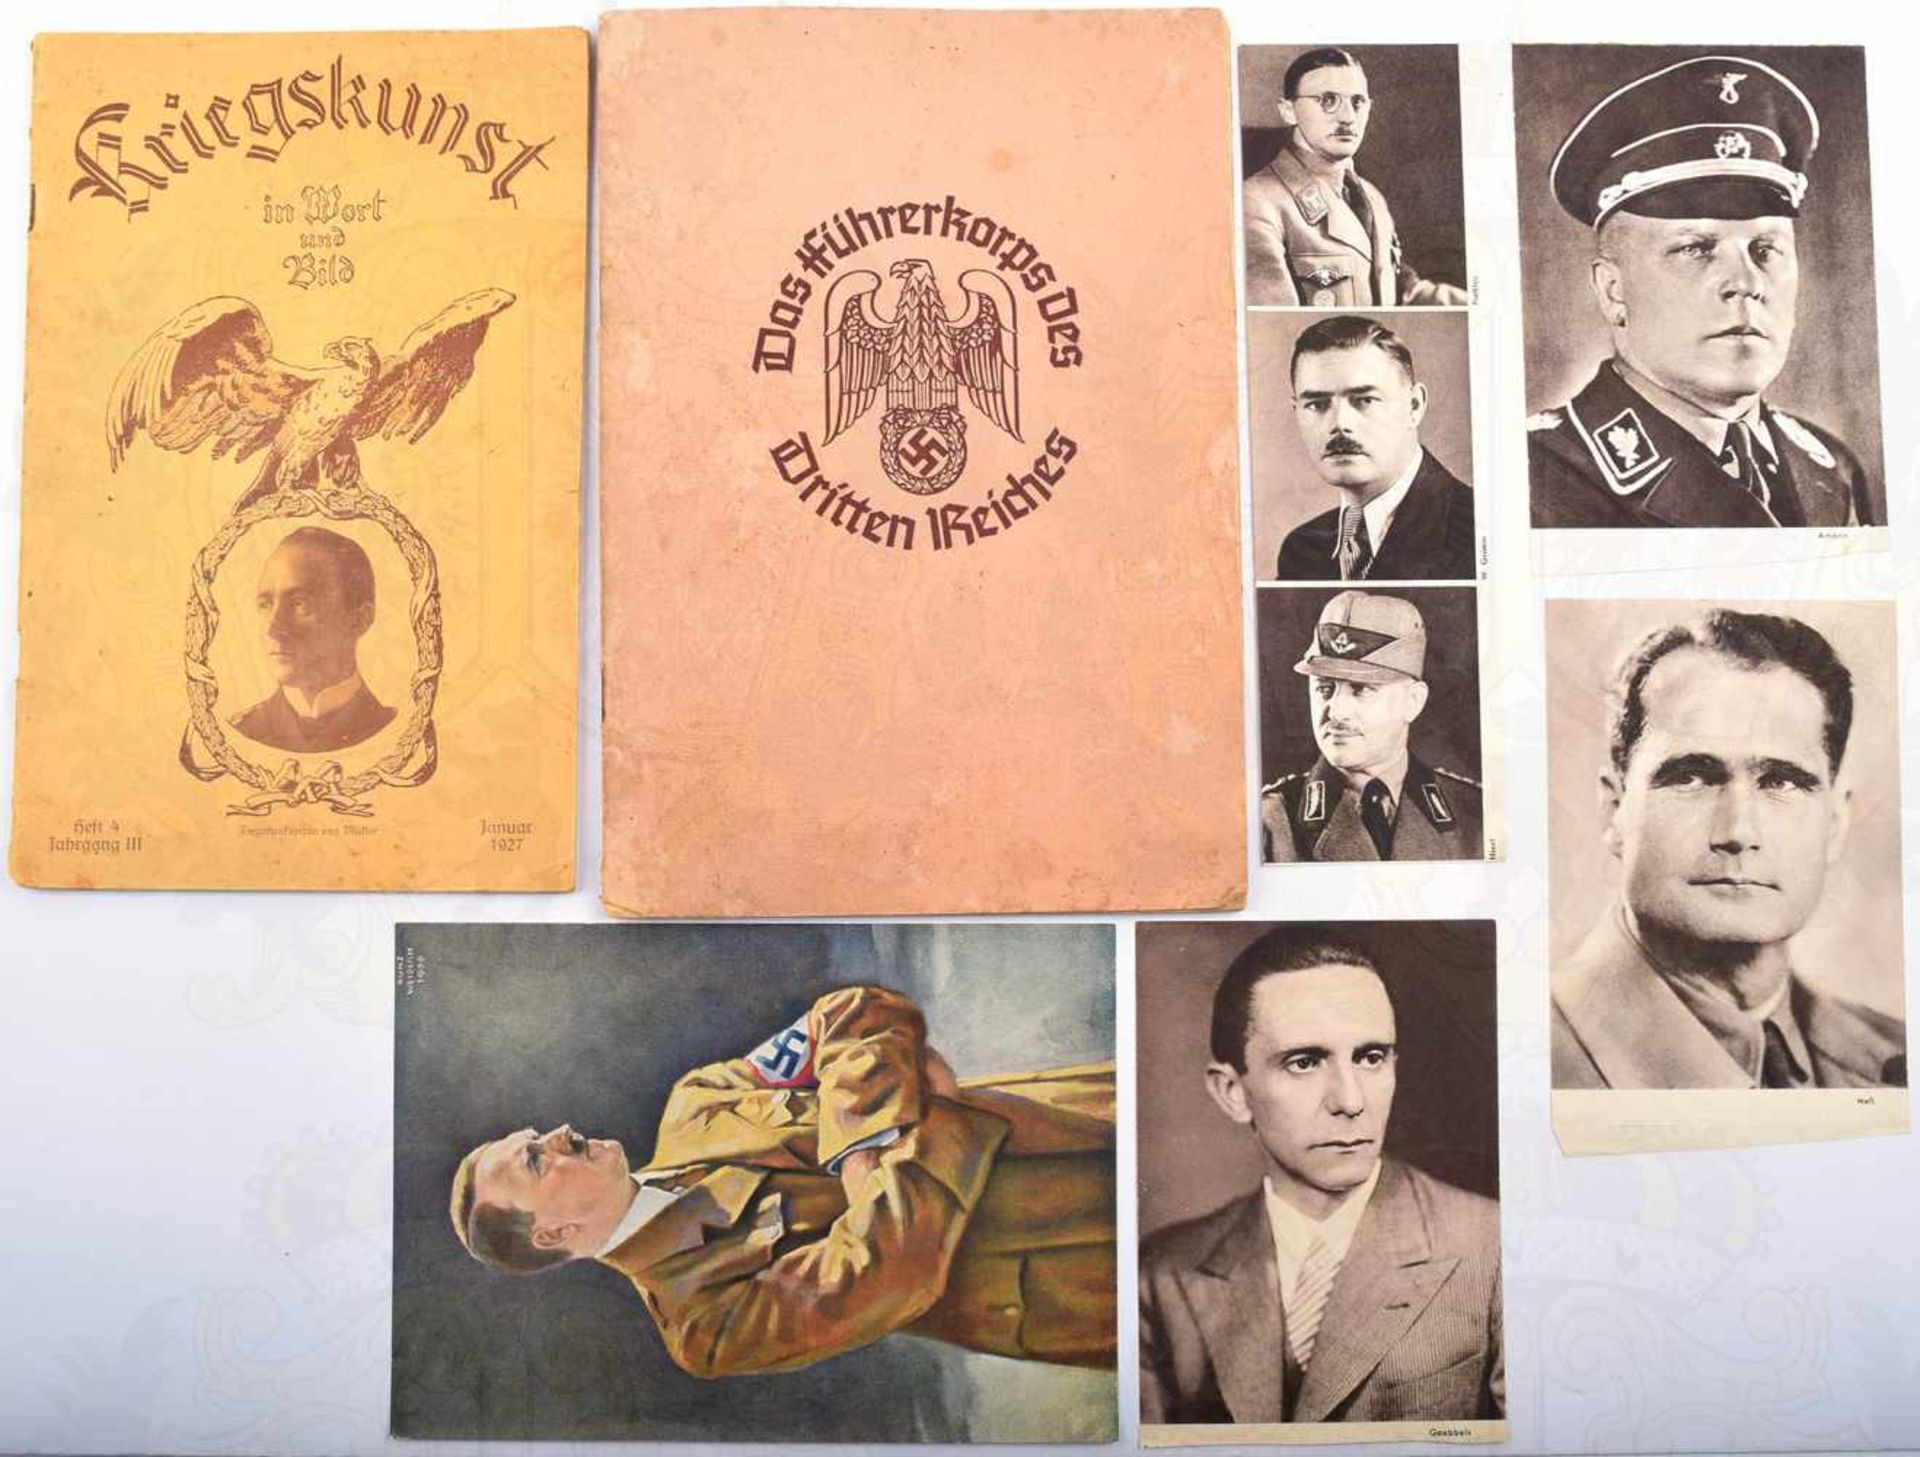 DAS FÜHRERKORPS DES DRITTEN REICHES, Hrsg. Oberhessische Tageszeitung Giessen 1937, 62 von 66